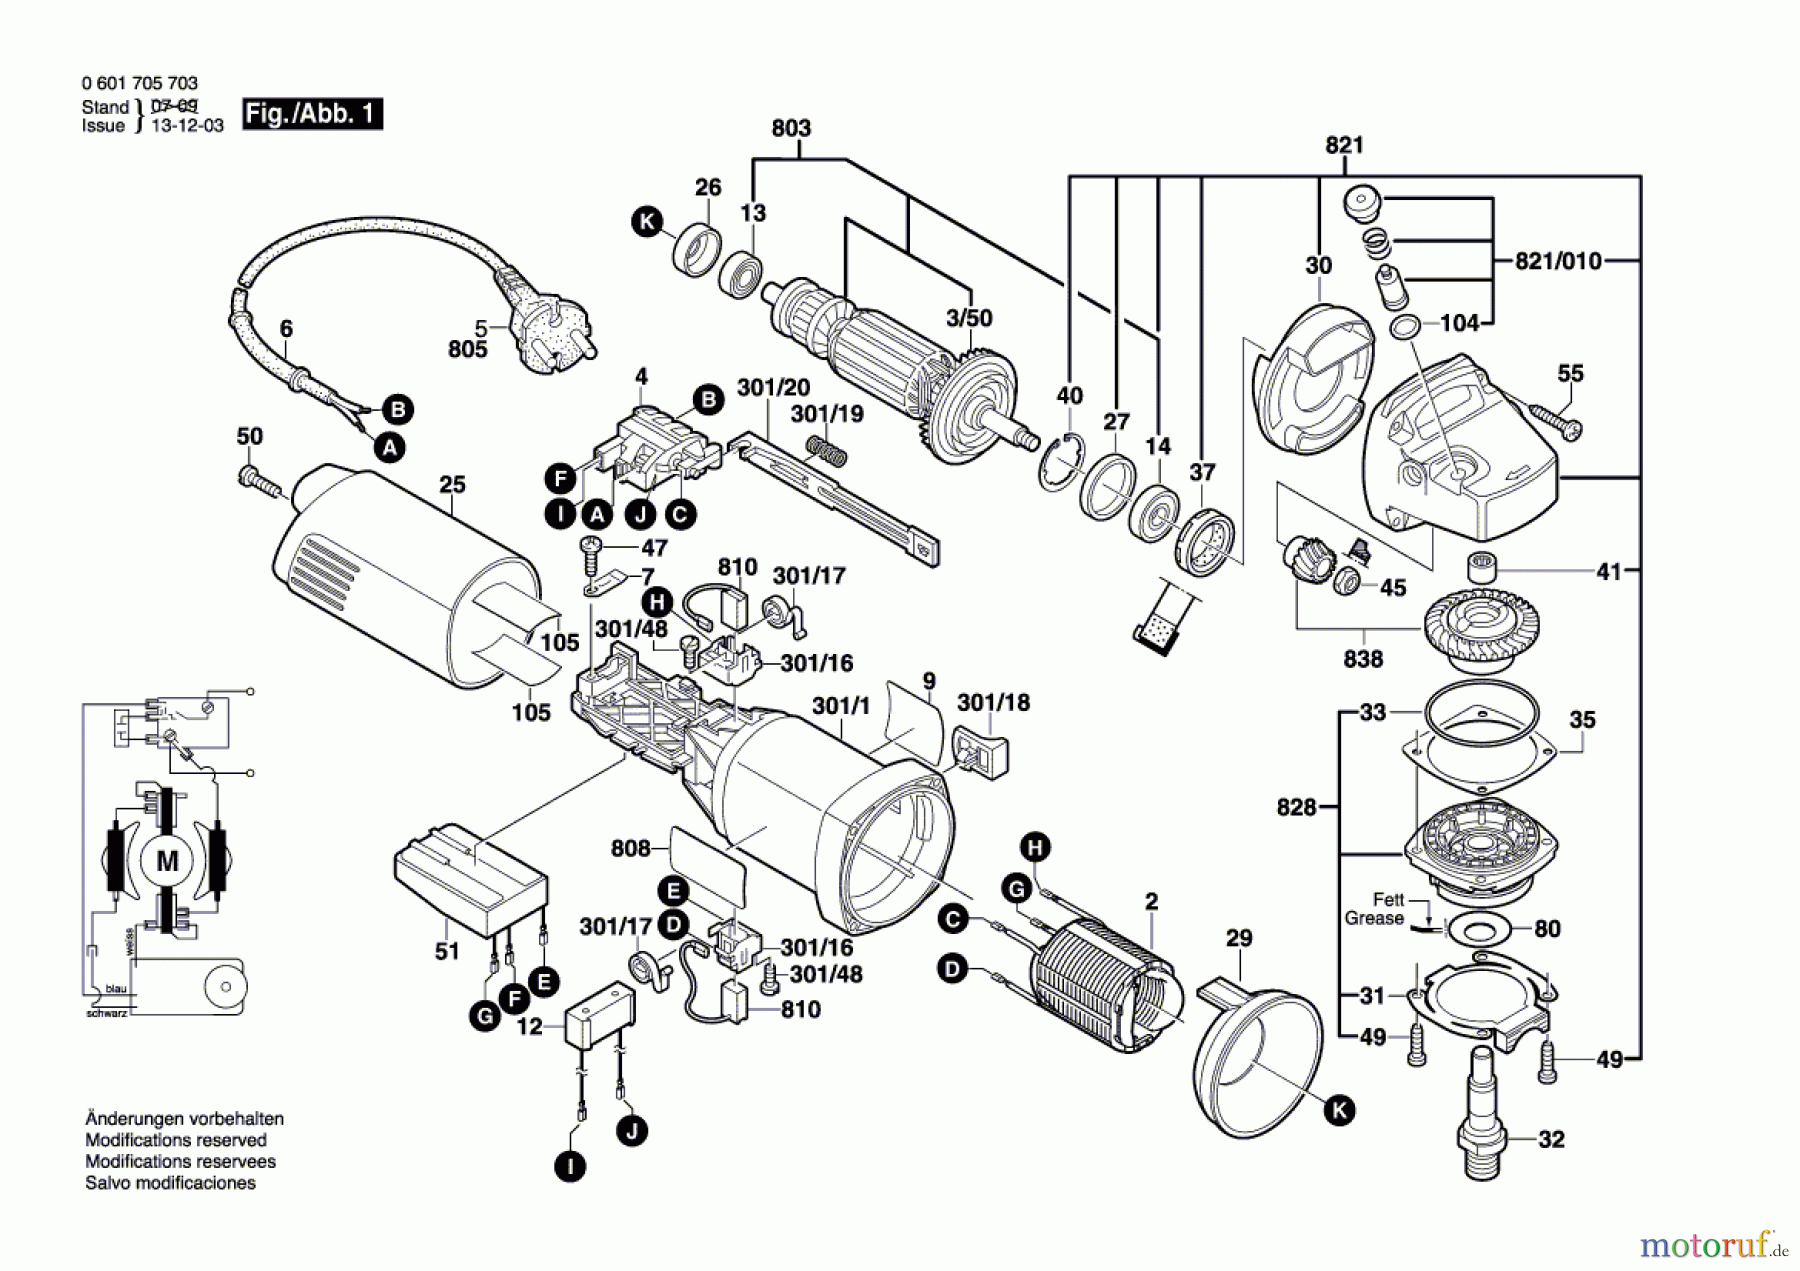  Bosch Werkzeug Winkelschleifer GWS 14-125 CE Seite 1